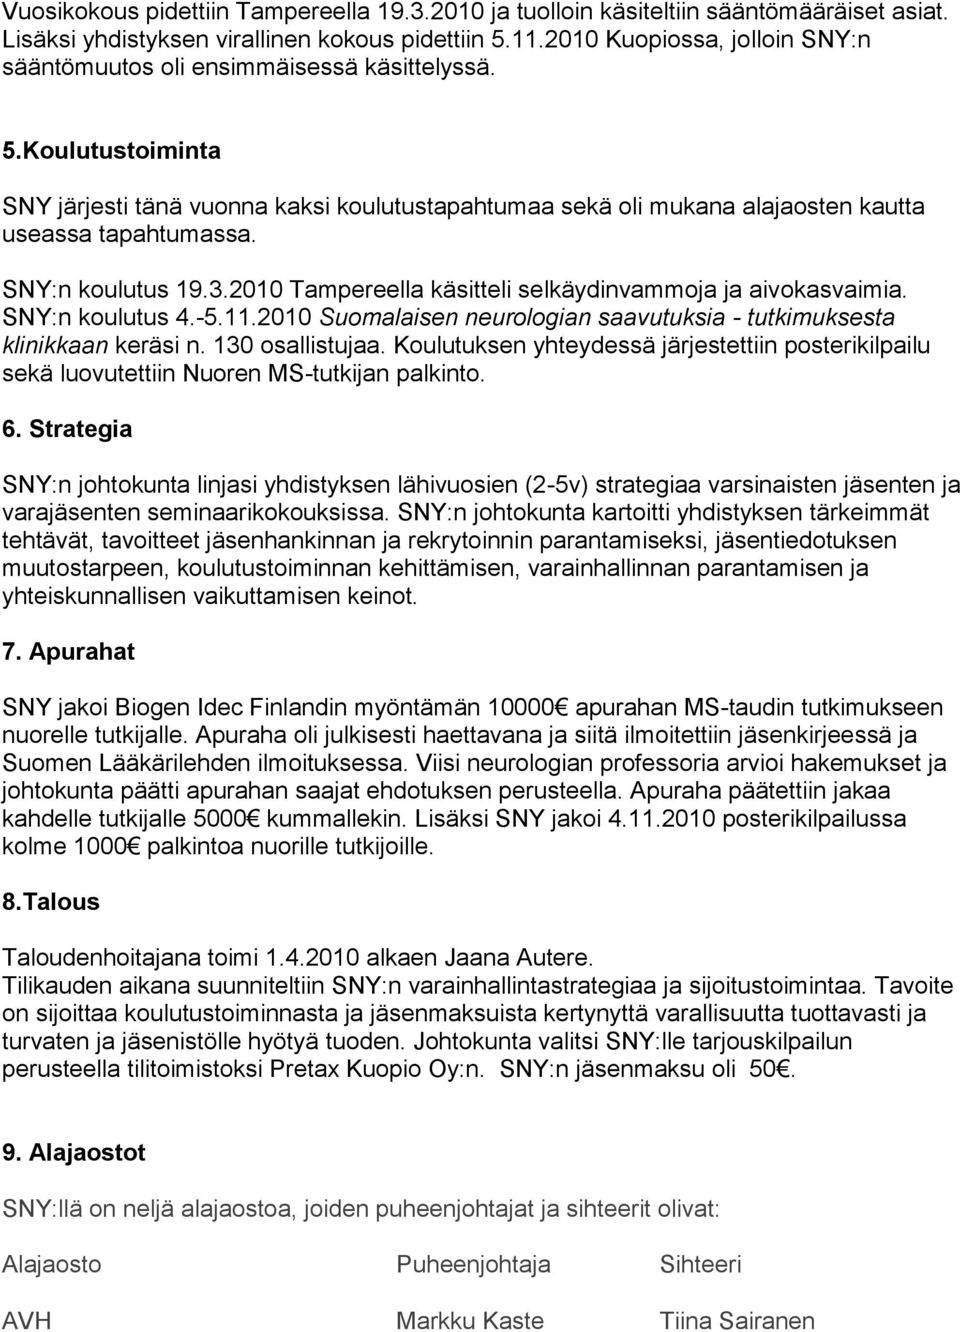 SNY:n koulutus 19.3.2010 Tampereella käsitteli selkäydinvammoja ja aivokasvaimia. SNY:n koulutus 4.-5.11.2010 Suomalaisen neurologian saavutuksia - tutkimuksesta klinikkaan keräsi n. 130 osallistujaa.